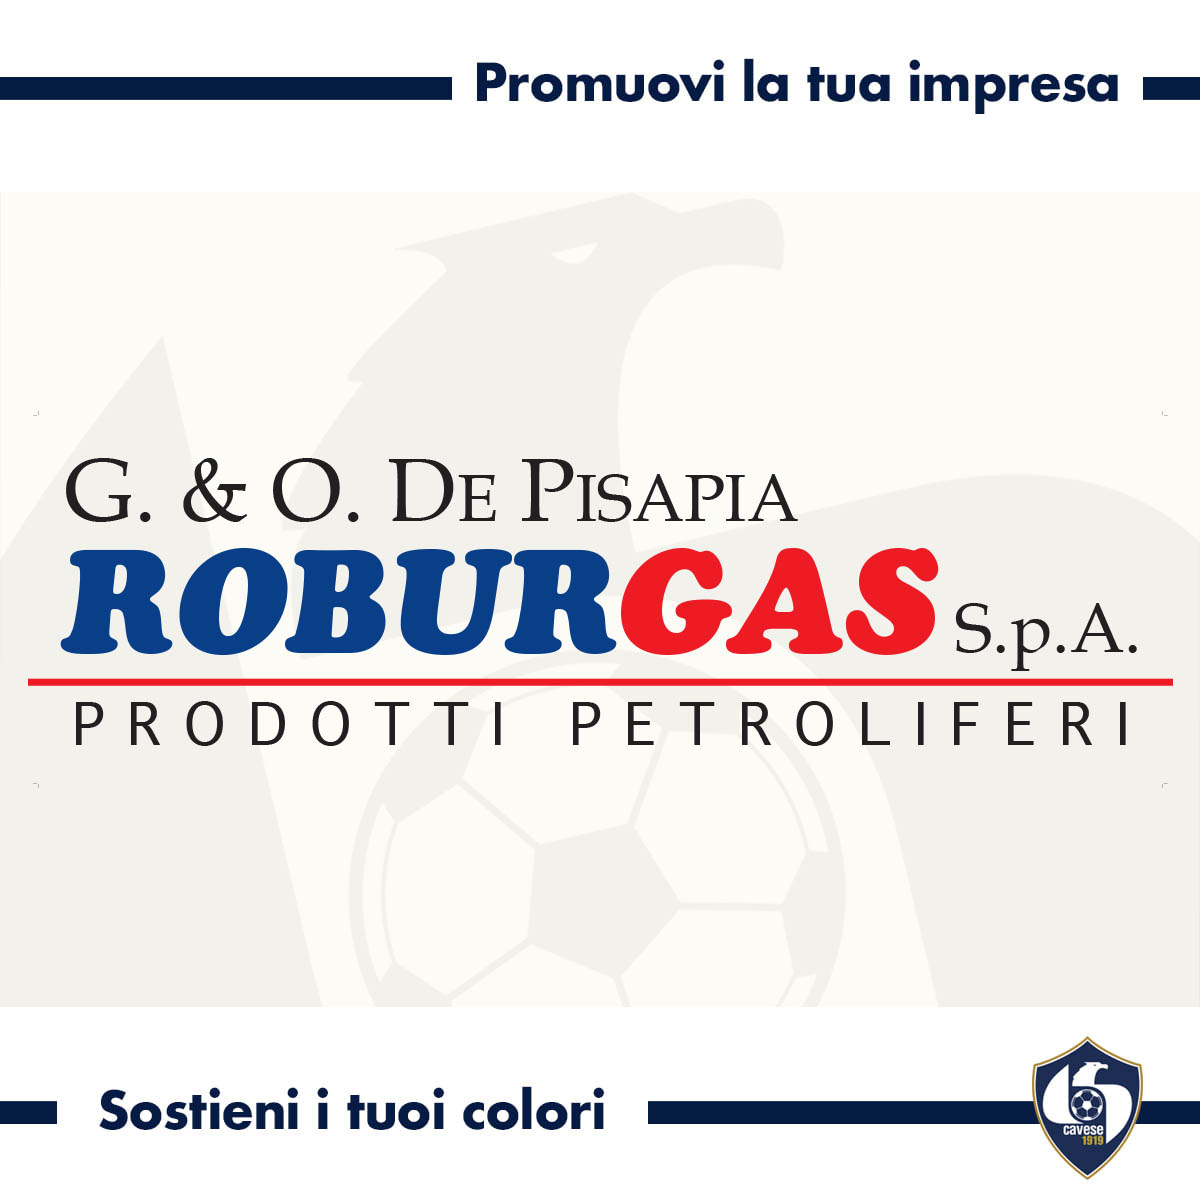 Roburgas, vendita e distribuzione di prodotti petroliferi e derivati